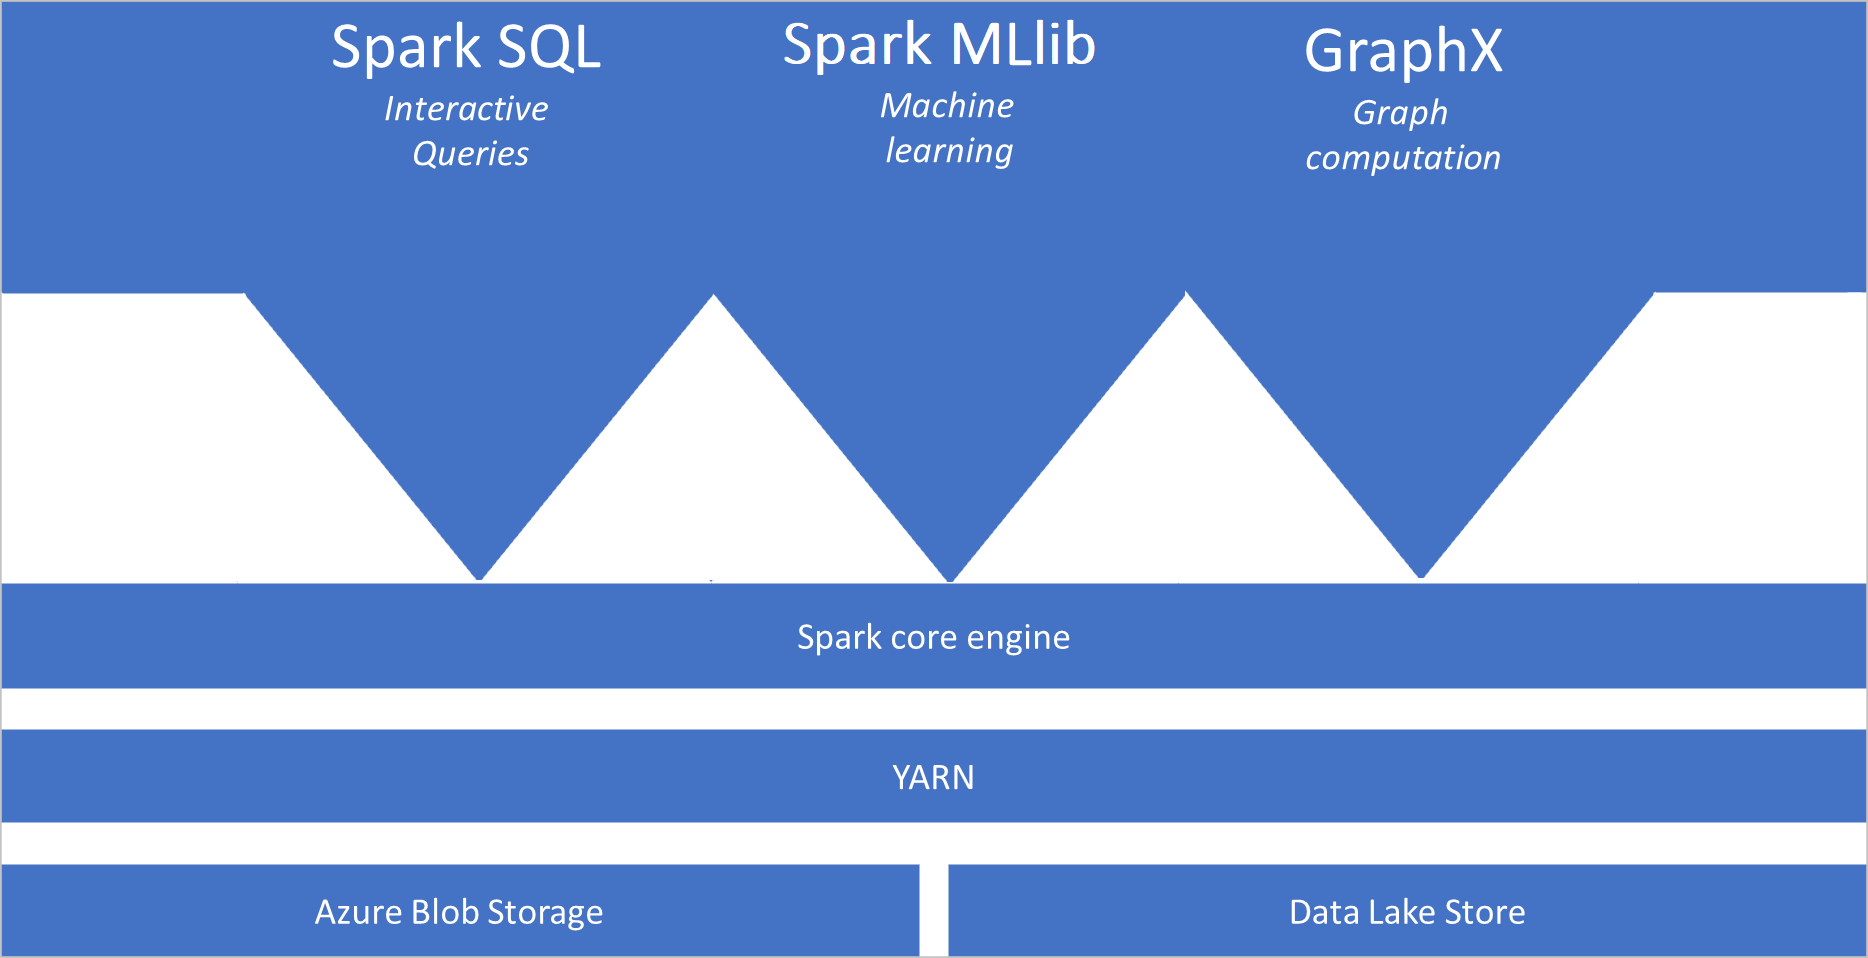 一个示意图，其中显示了链接到 Spark 核心引擎的 Spark SQL、Spark MLib 和 GraphX，位于存储服务上的 YARN 层上方。